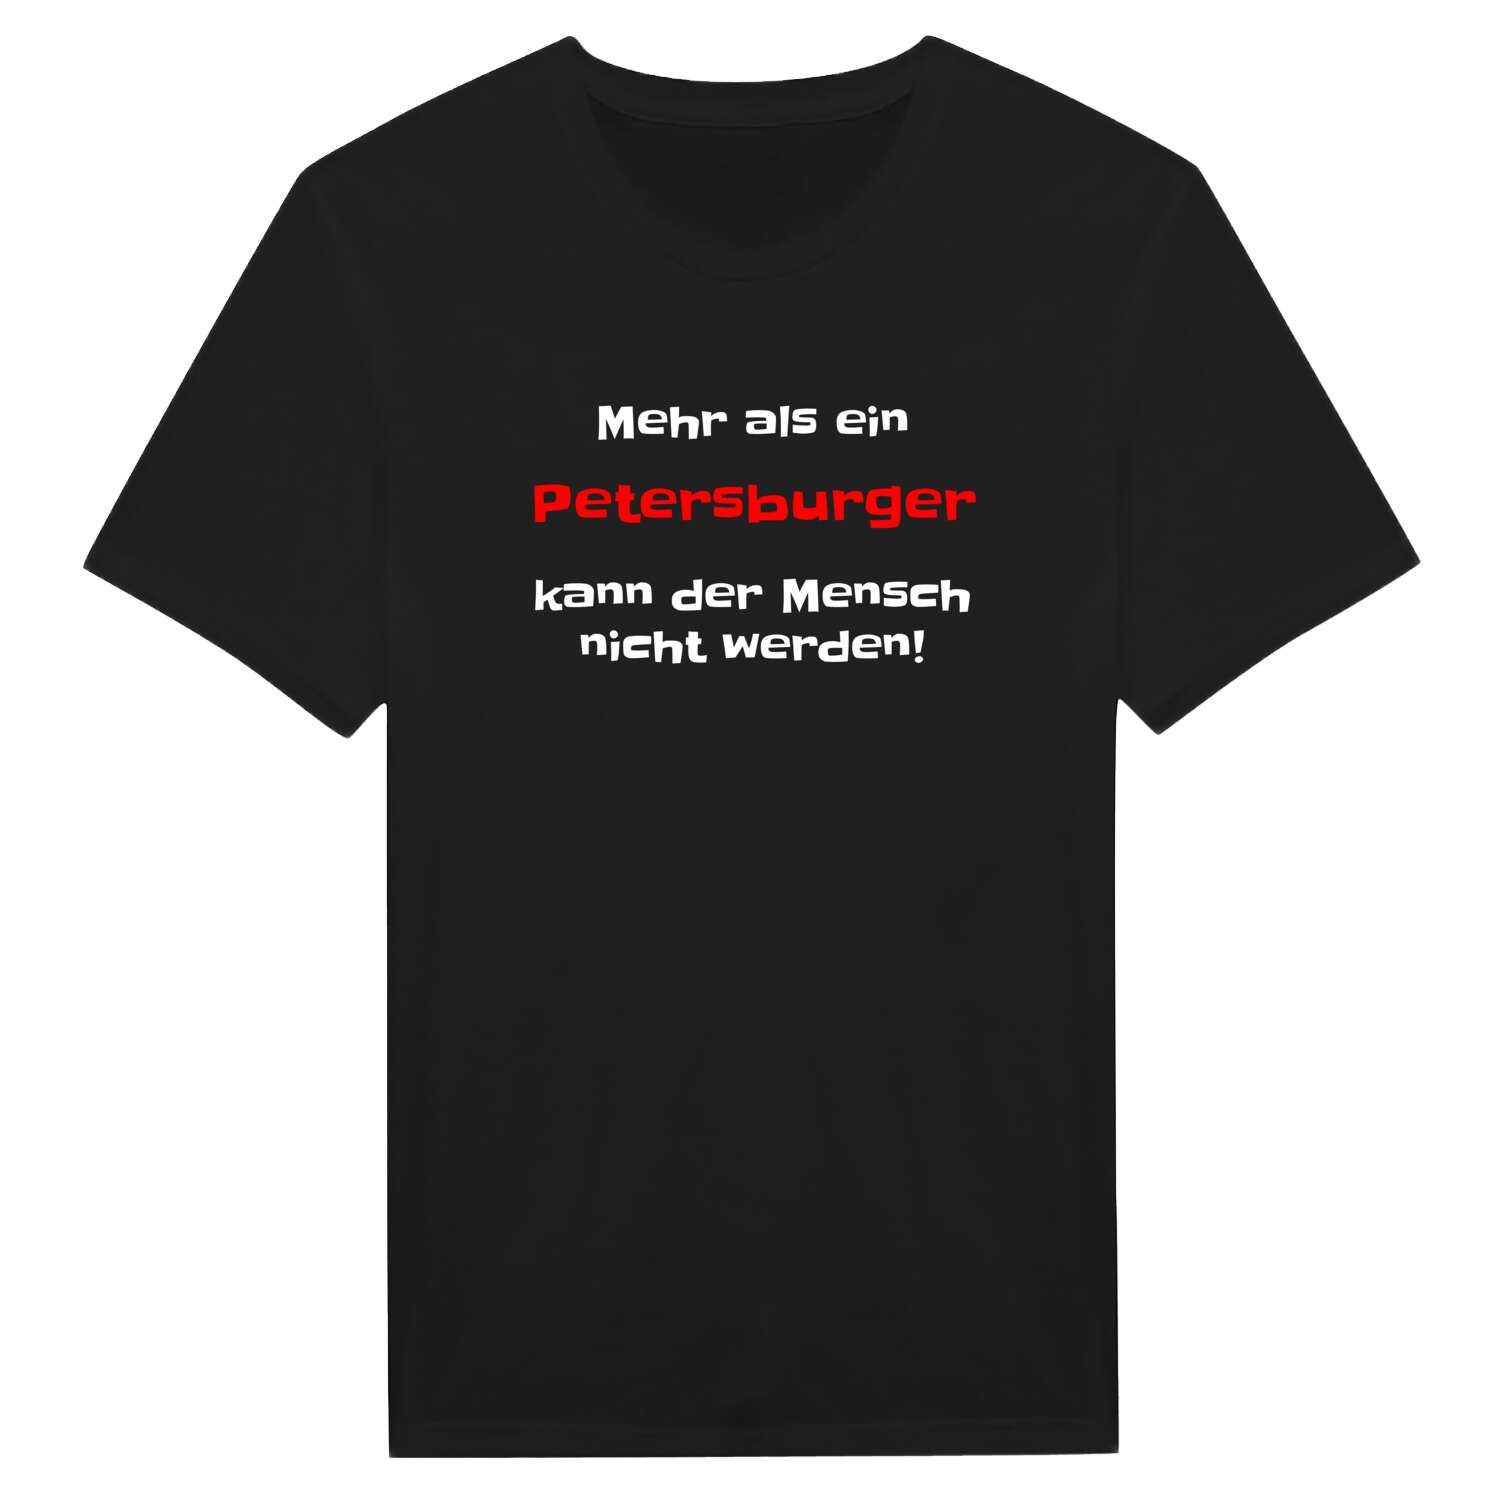 Petersburg T-Shirt »Mehr als ein«